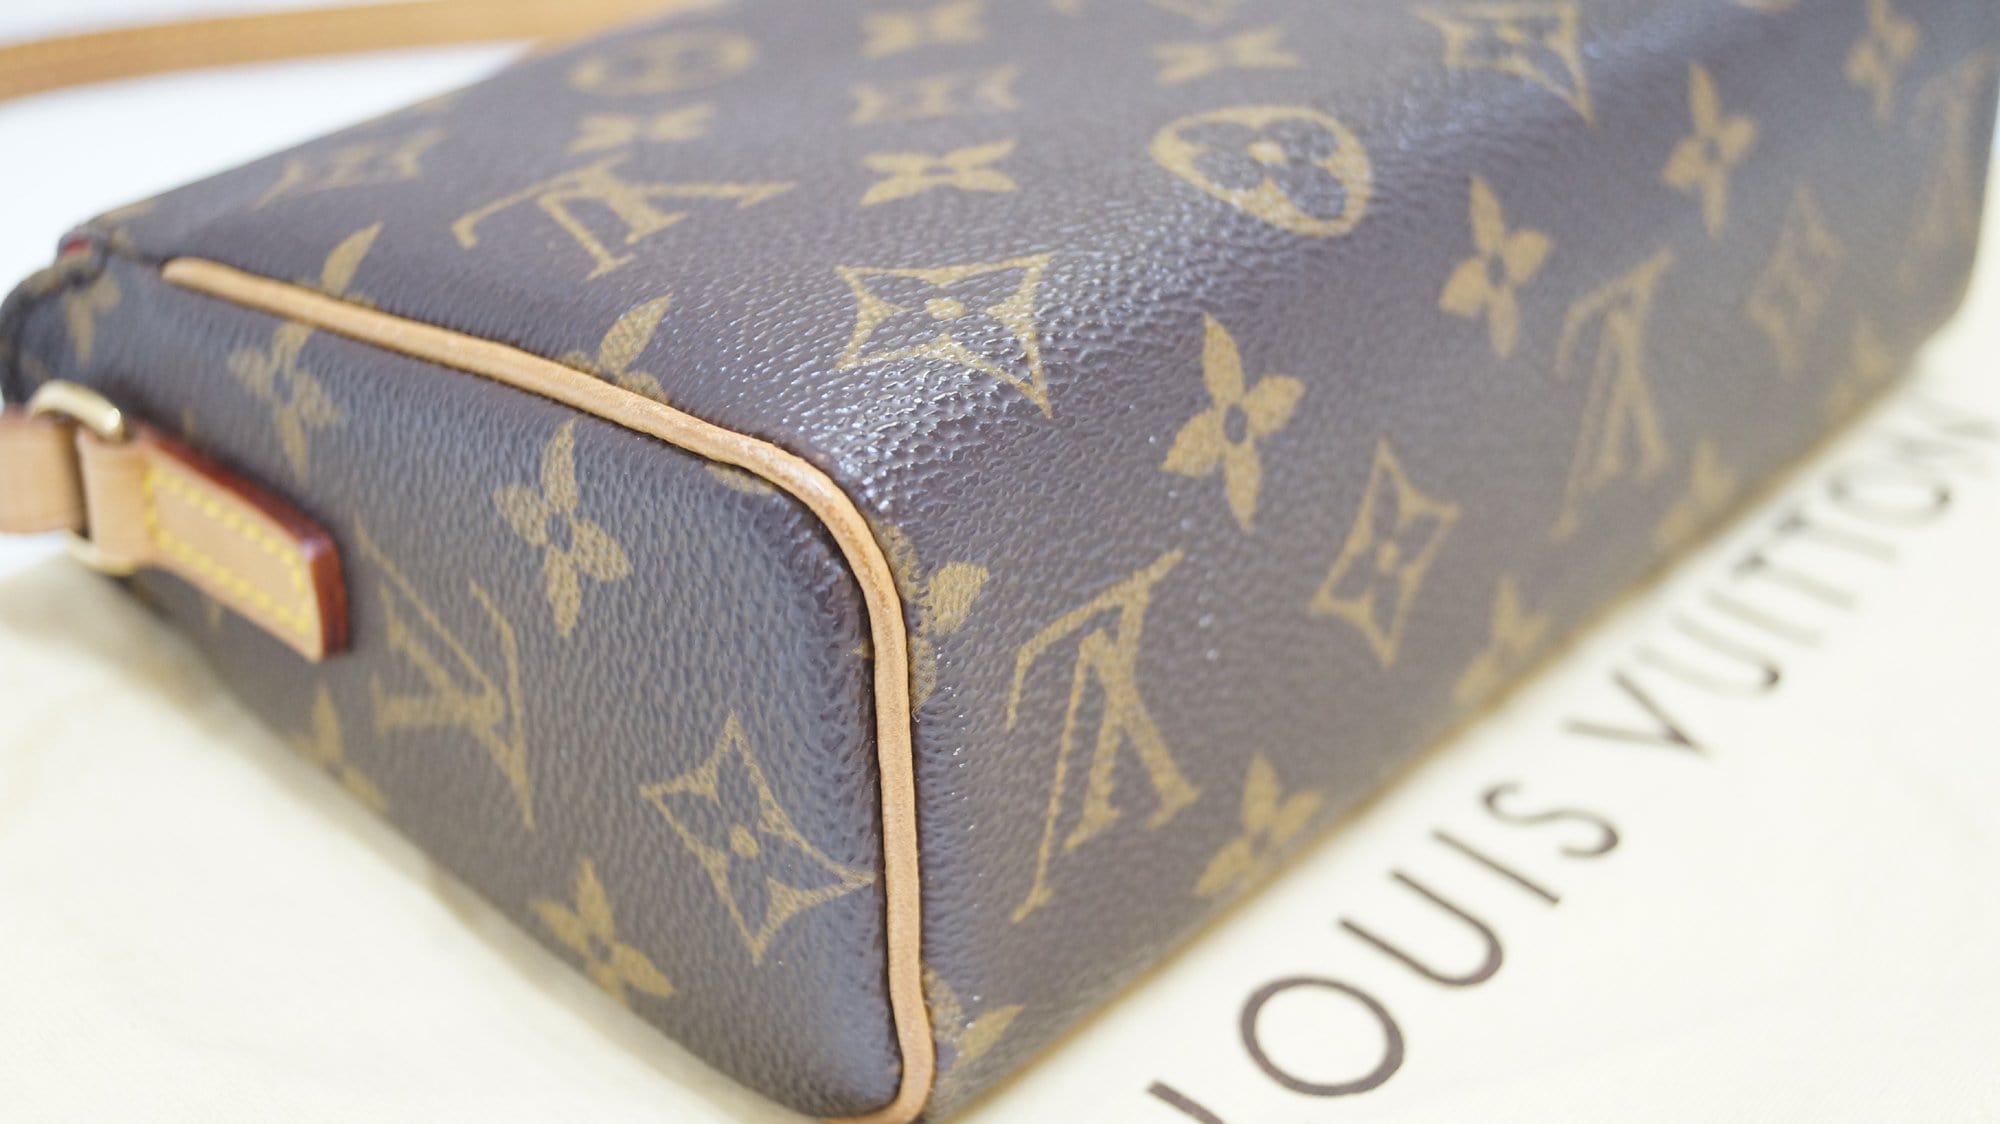 Louis Vuitton Monogram Recital Bag - Brown Shoulder Bags, Handbags